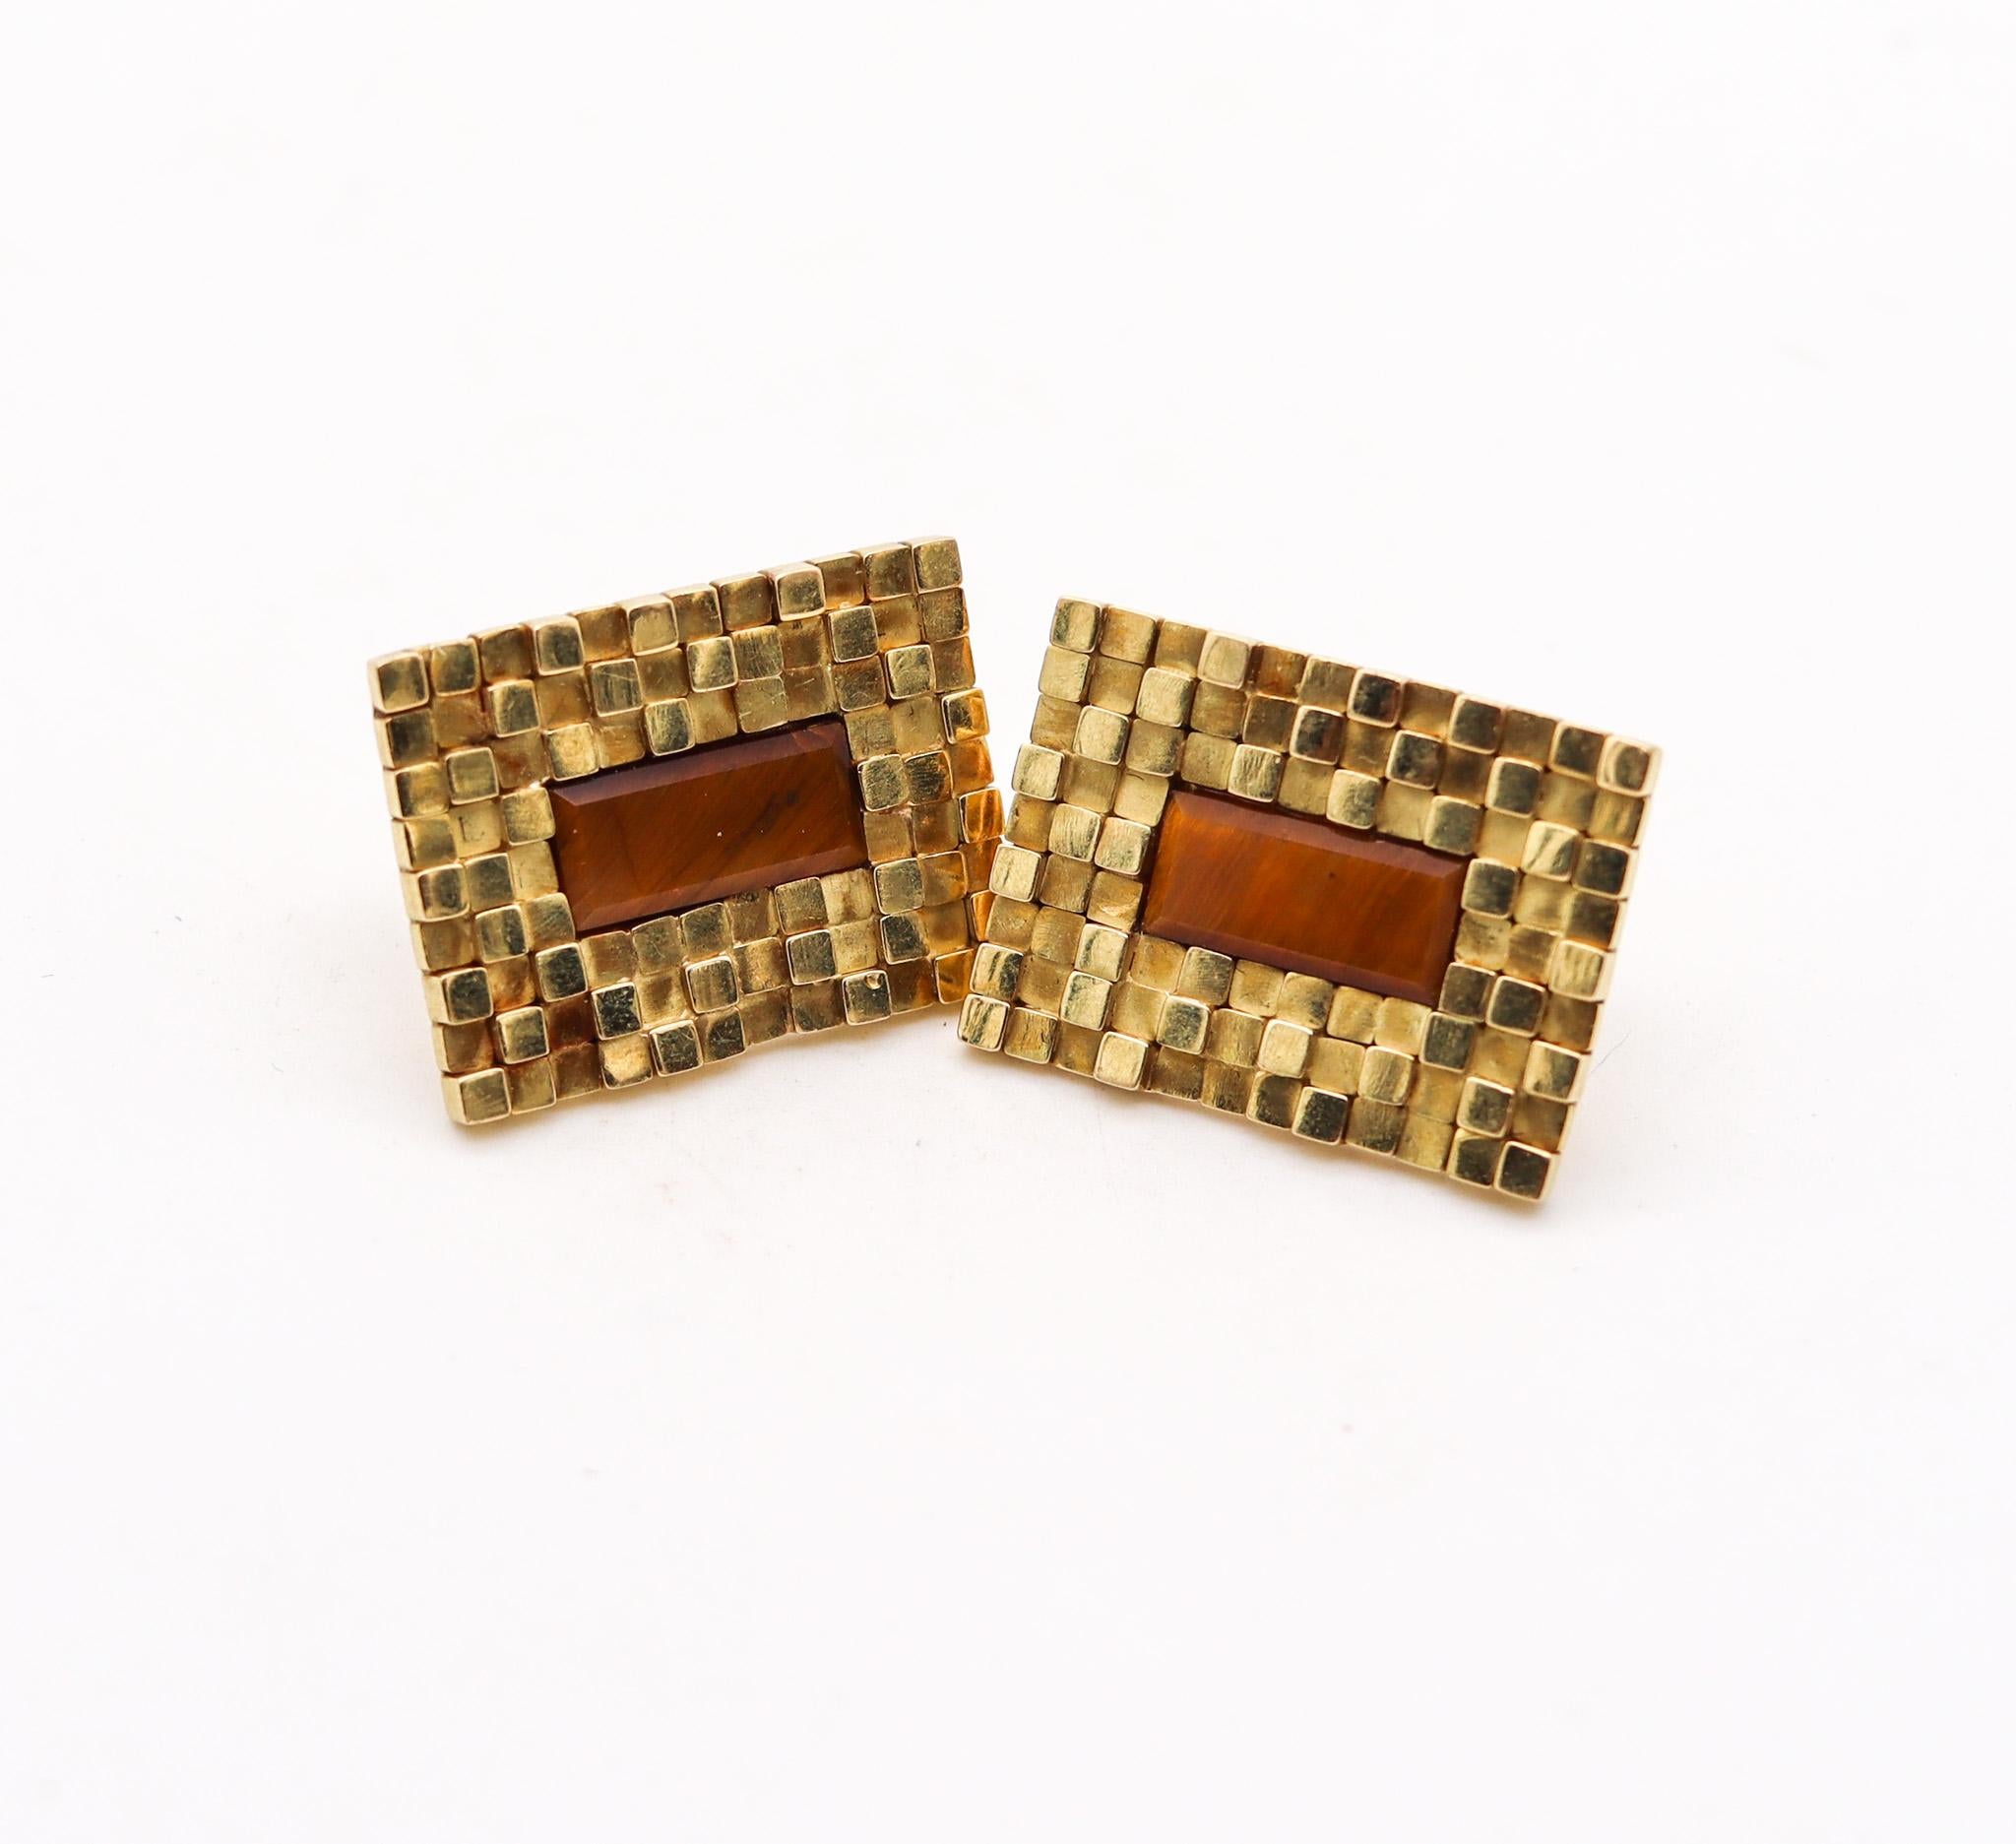 Women's Spritzer & Furhmann 1960 Modernist Geometric Earrings 18Kt Gold With Tiger's Eye For Sale